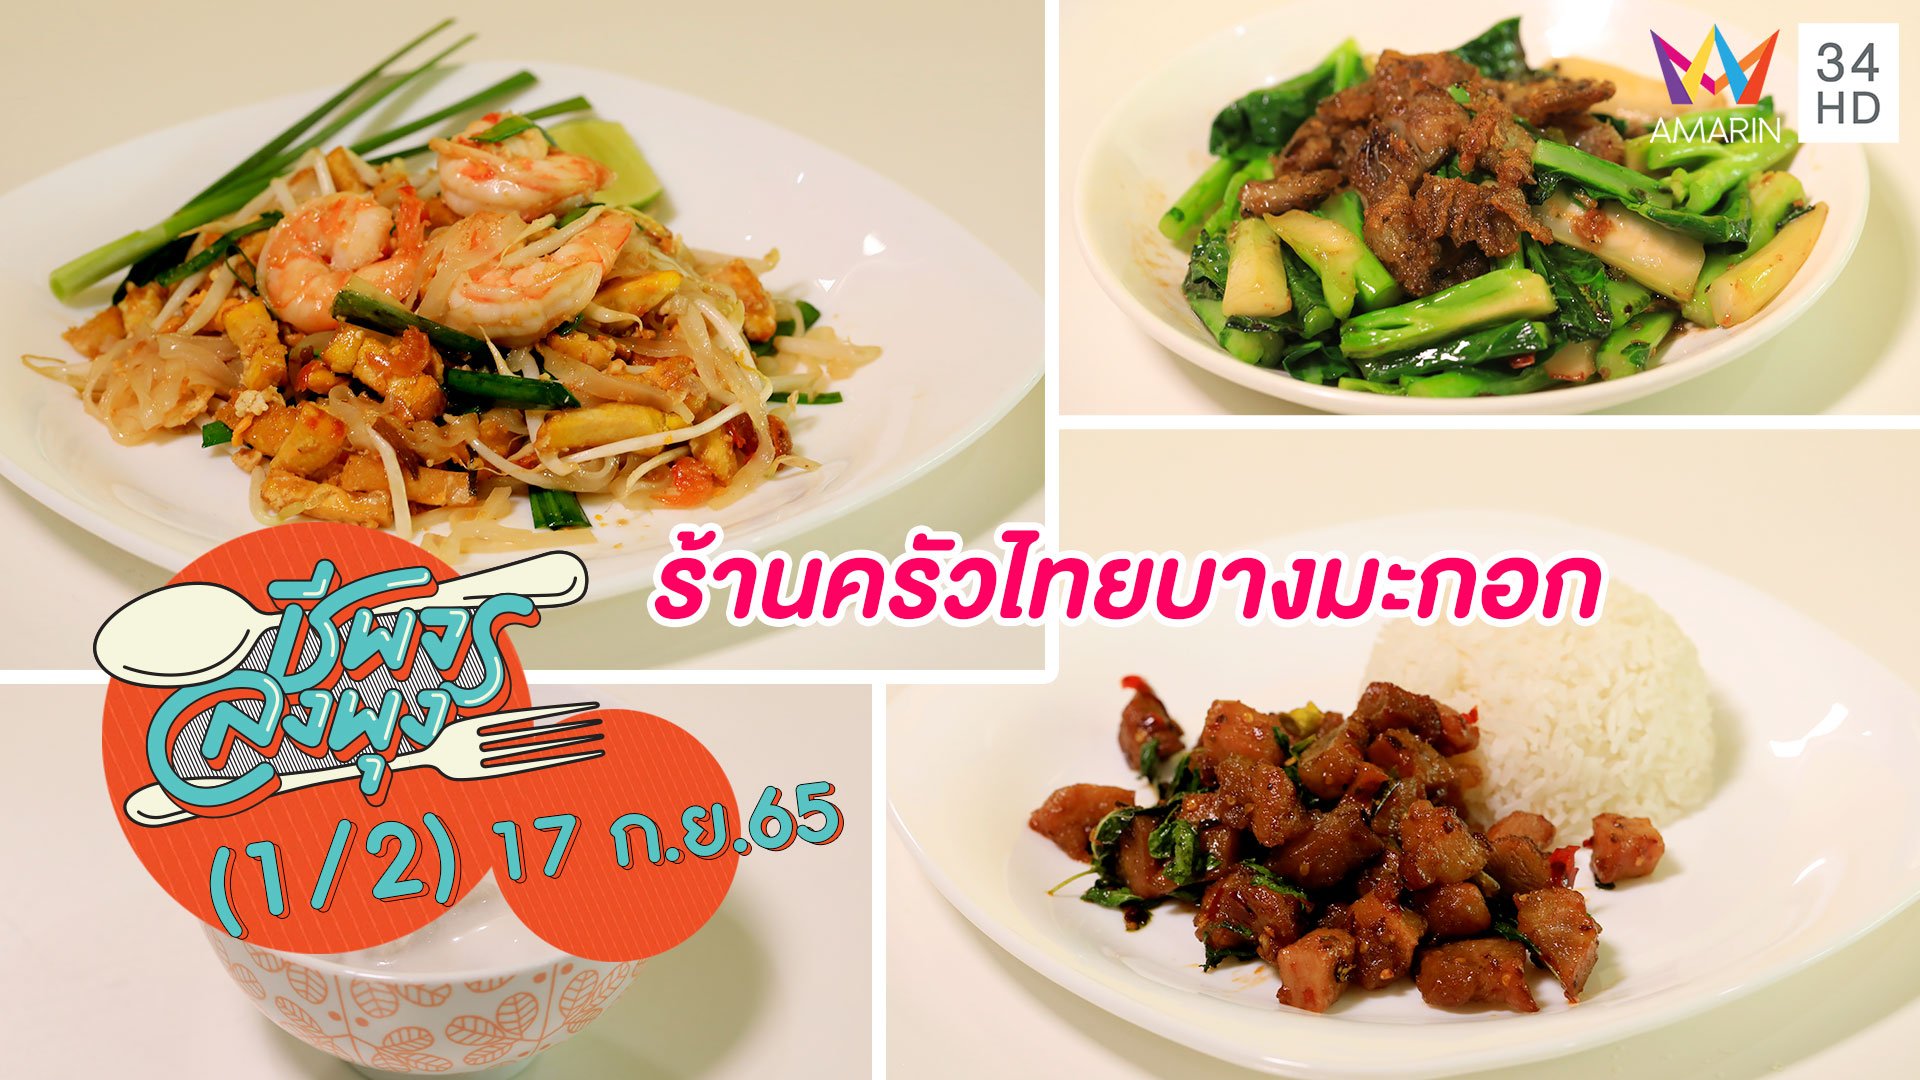 อาหารไทย รสชาติถูกปาก @ร้านครัวไทยบางมะกอก | ชีพจรลงพุง | 17 ก.ย. 65 (1/2) | AMARIN TVHD34